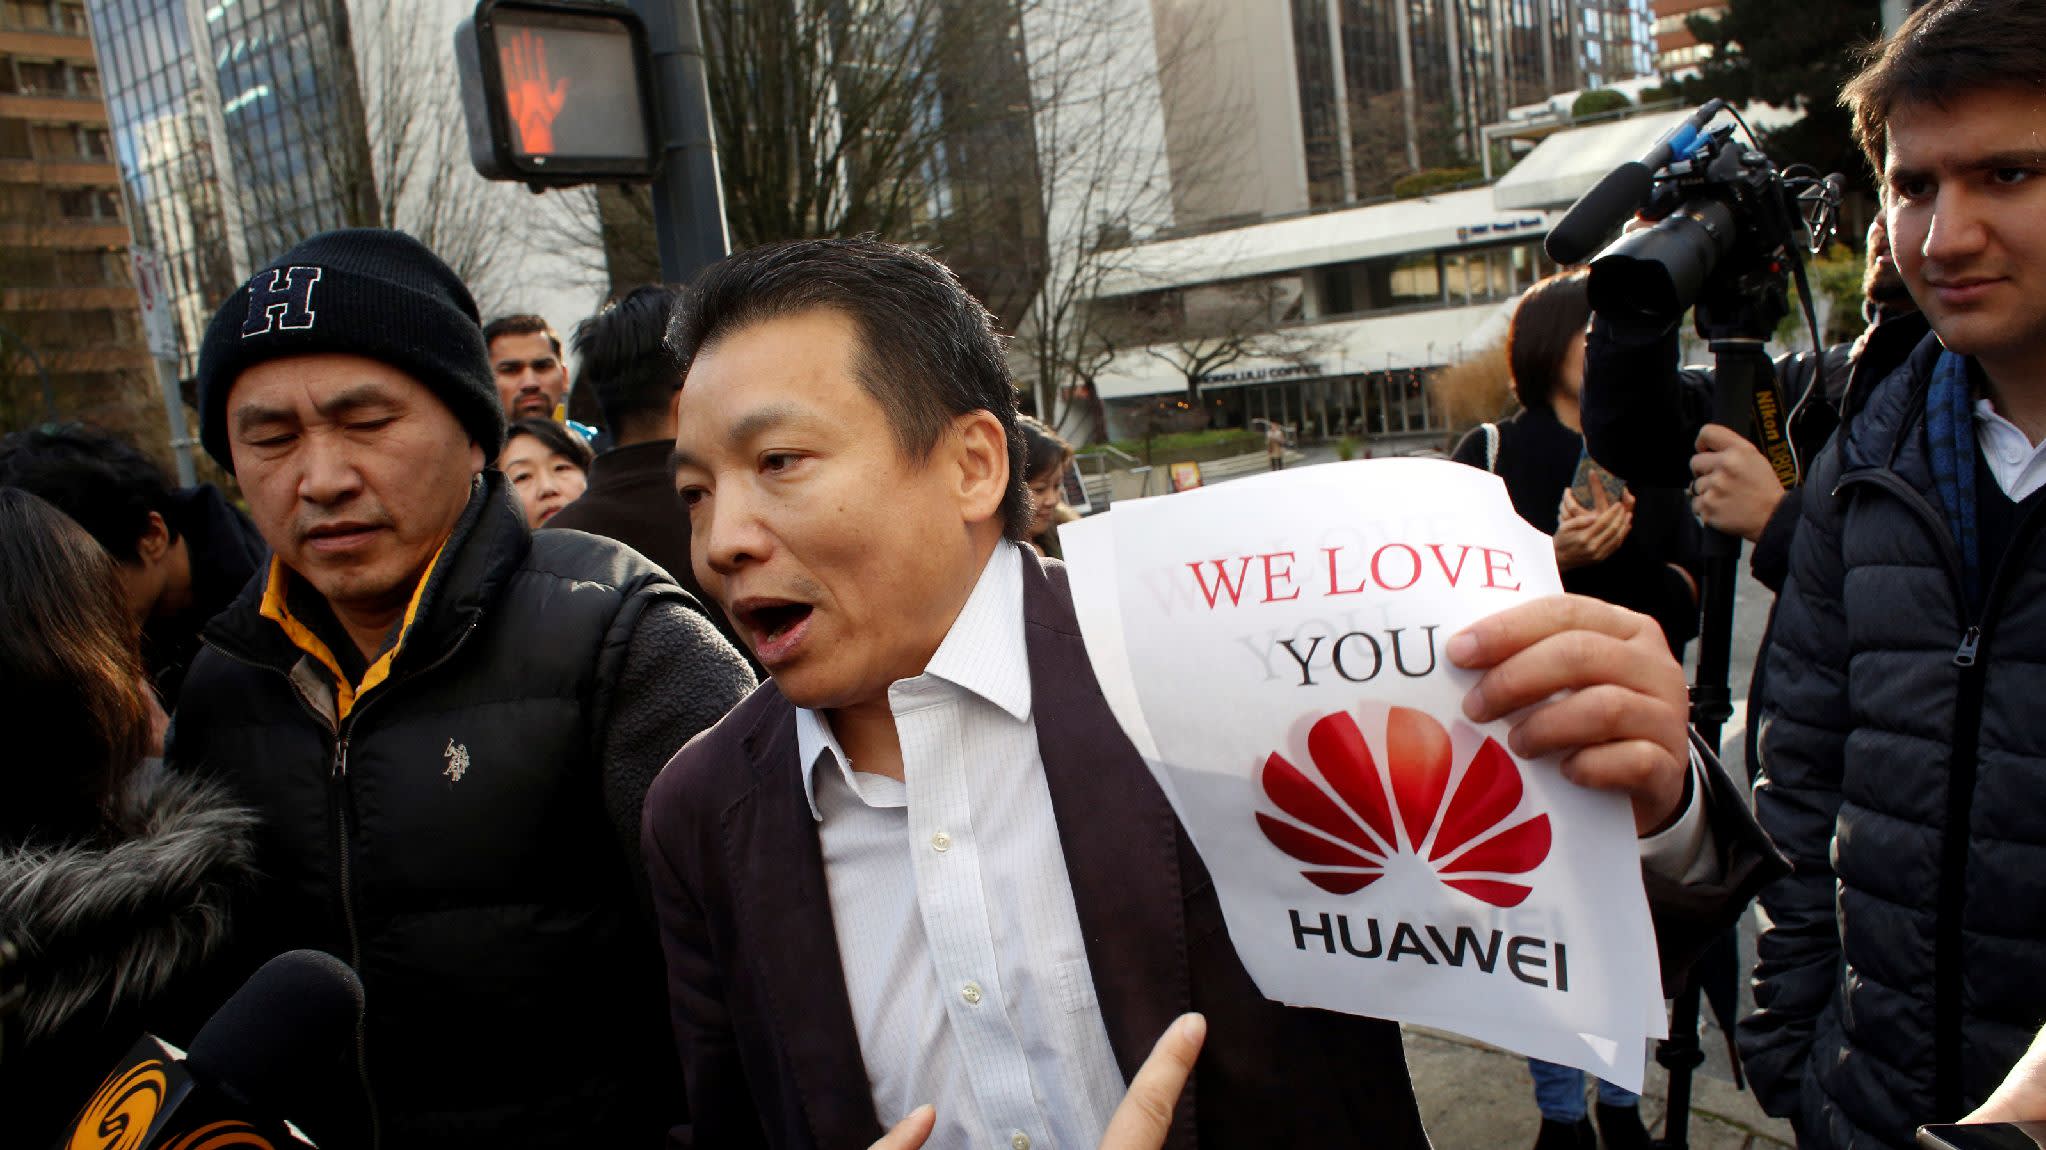 Китайские компании решили поддержать Huawei, бойкотируя продукцию Apple